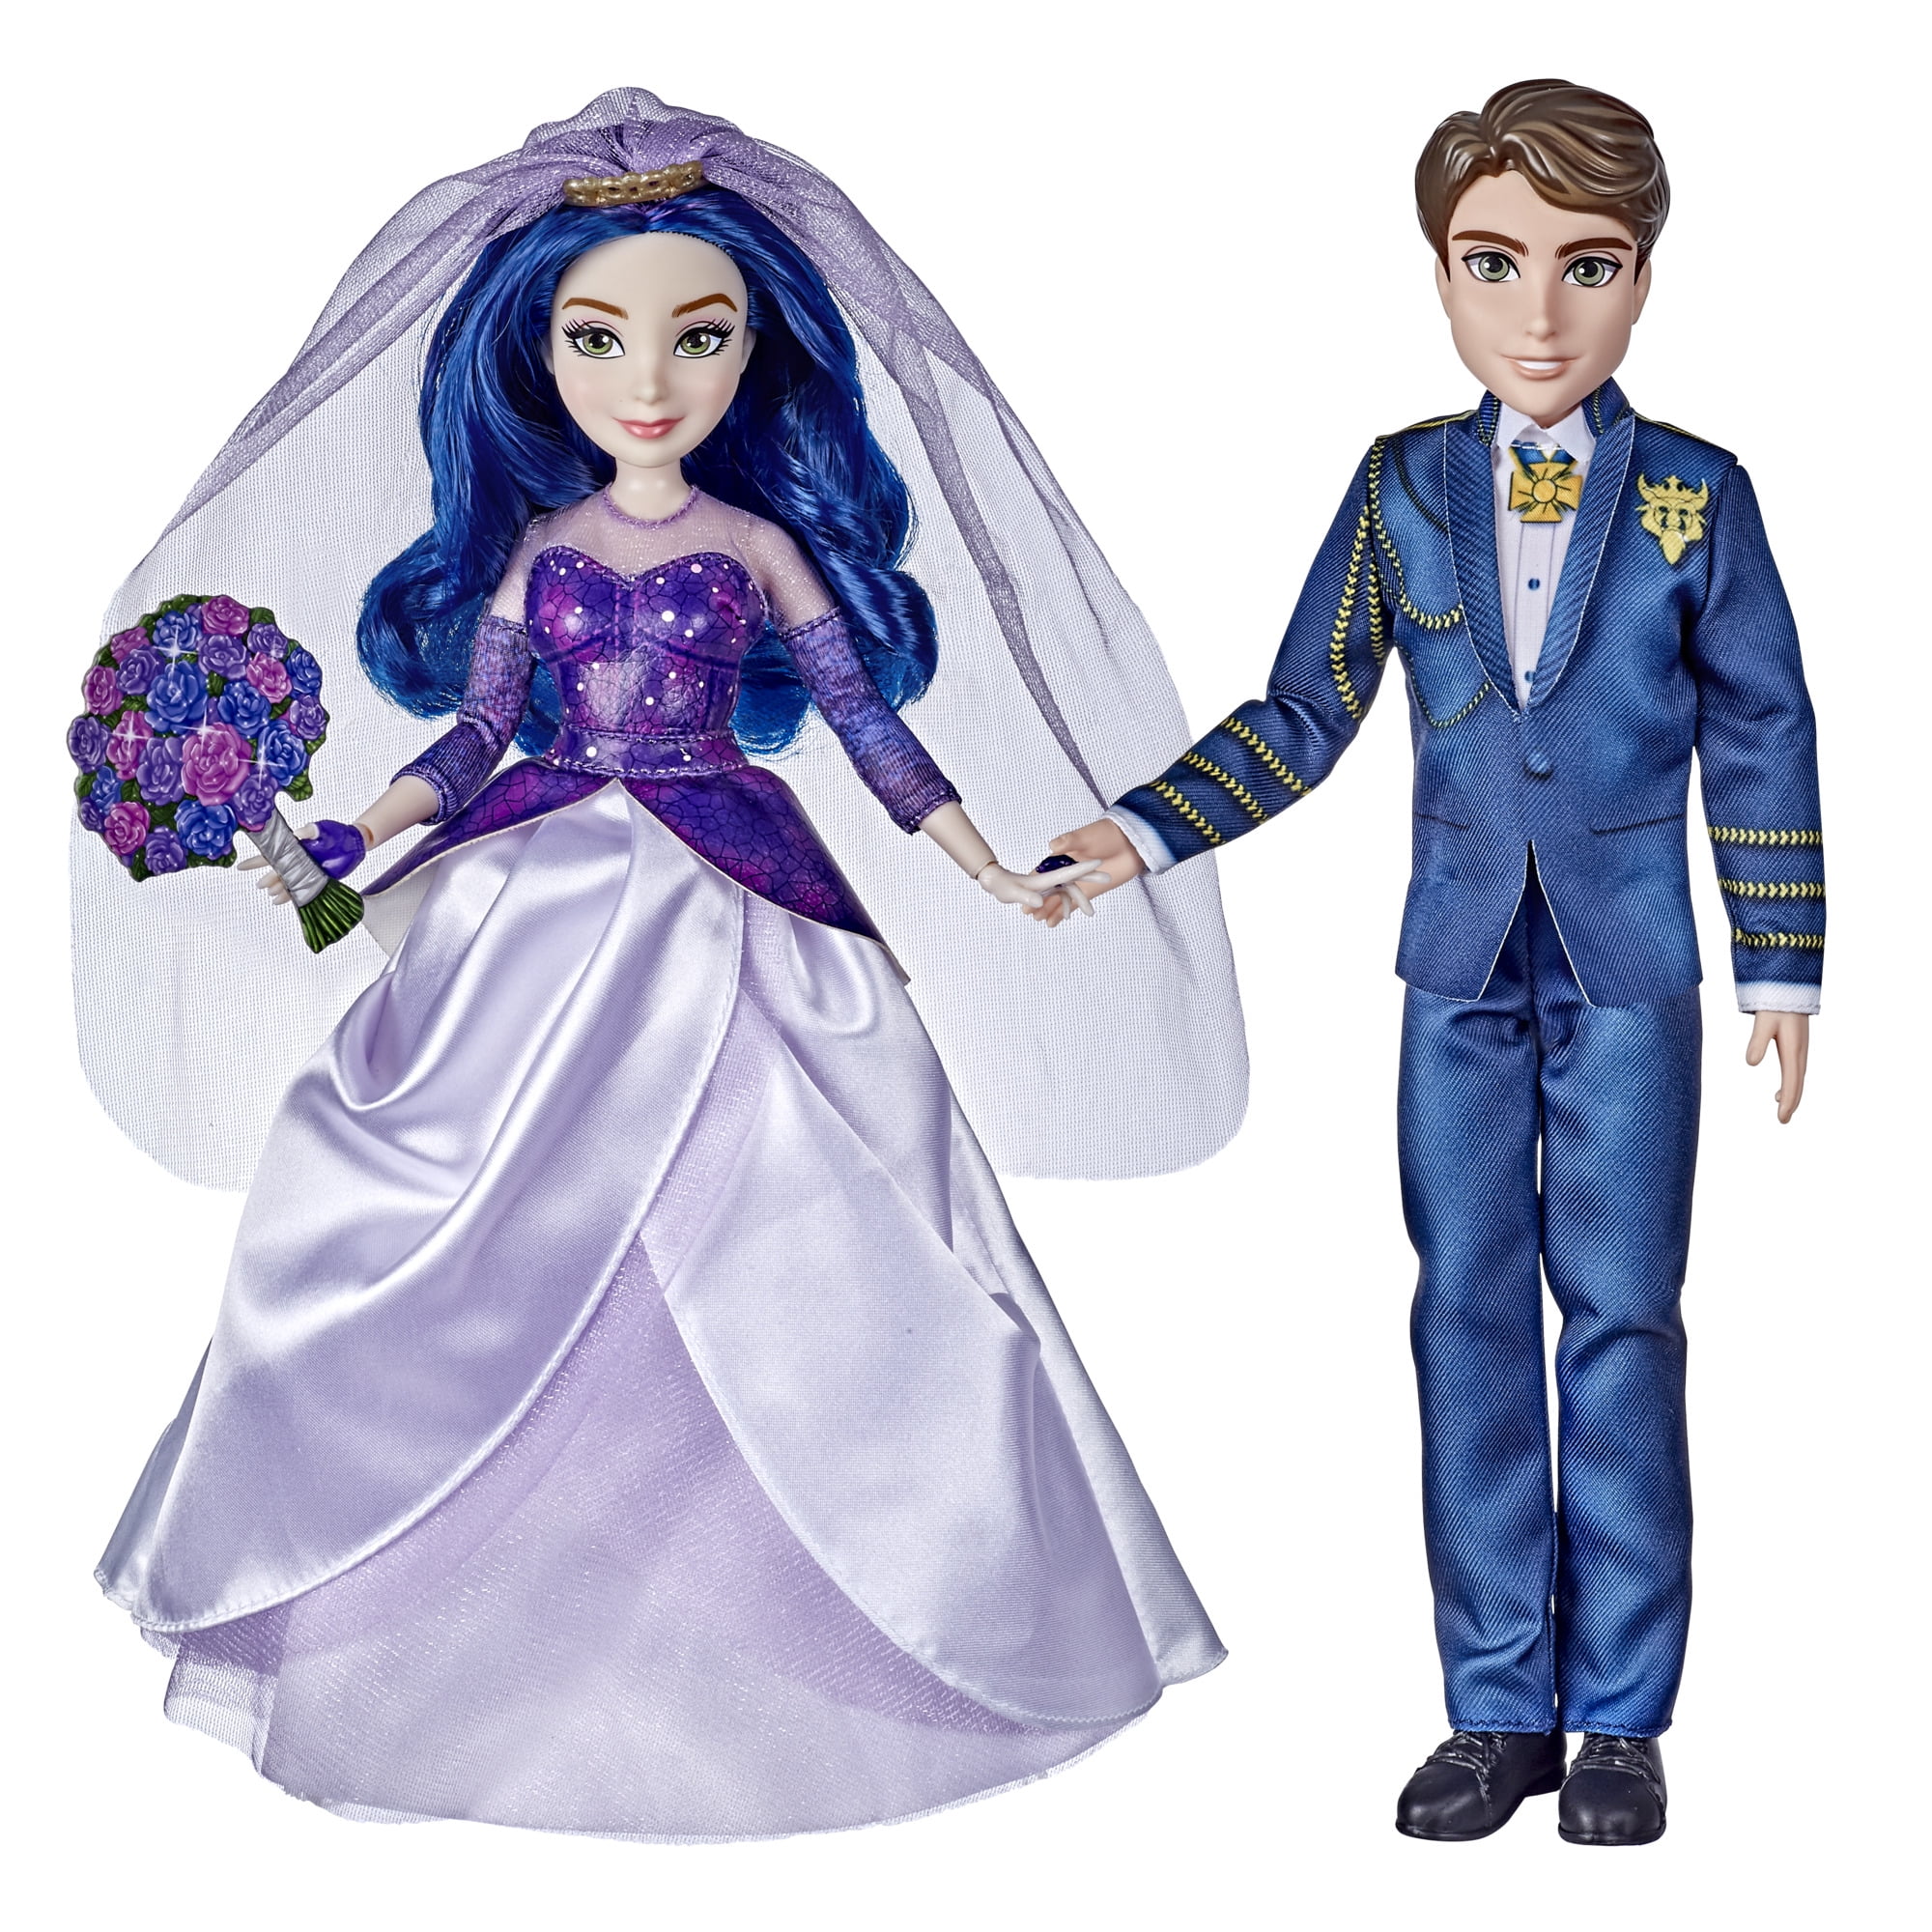 Details about   Disney Descendants 3 Royal Couple Engagement 